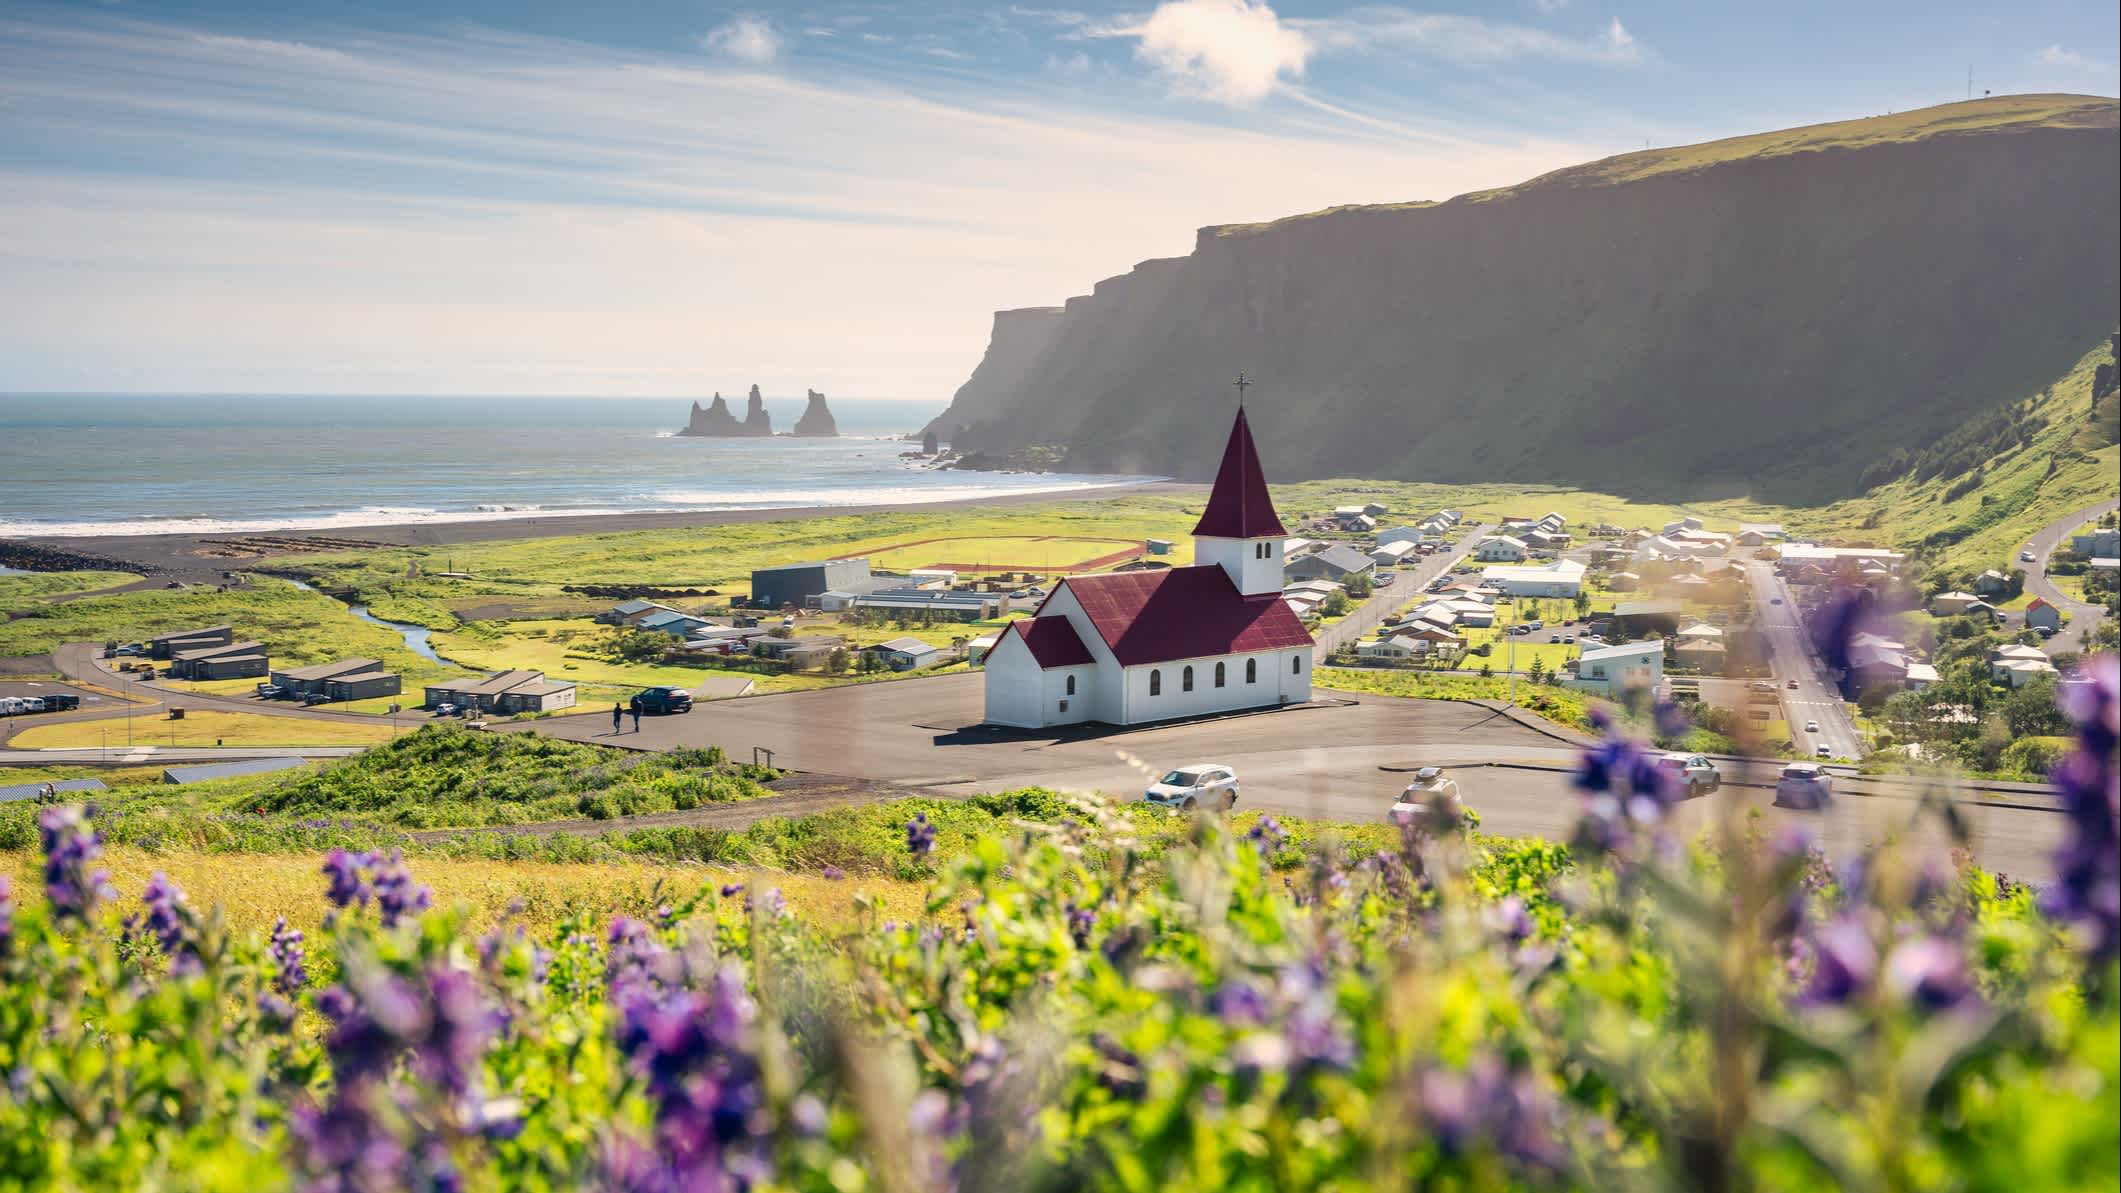 Beau paysage avec l'église de Vik, Islande.

